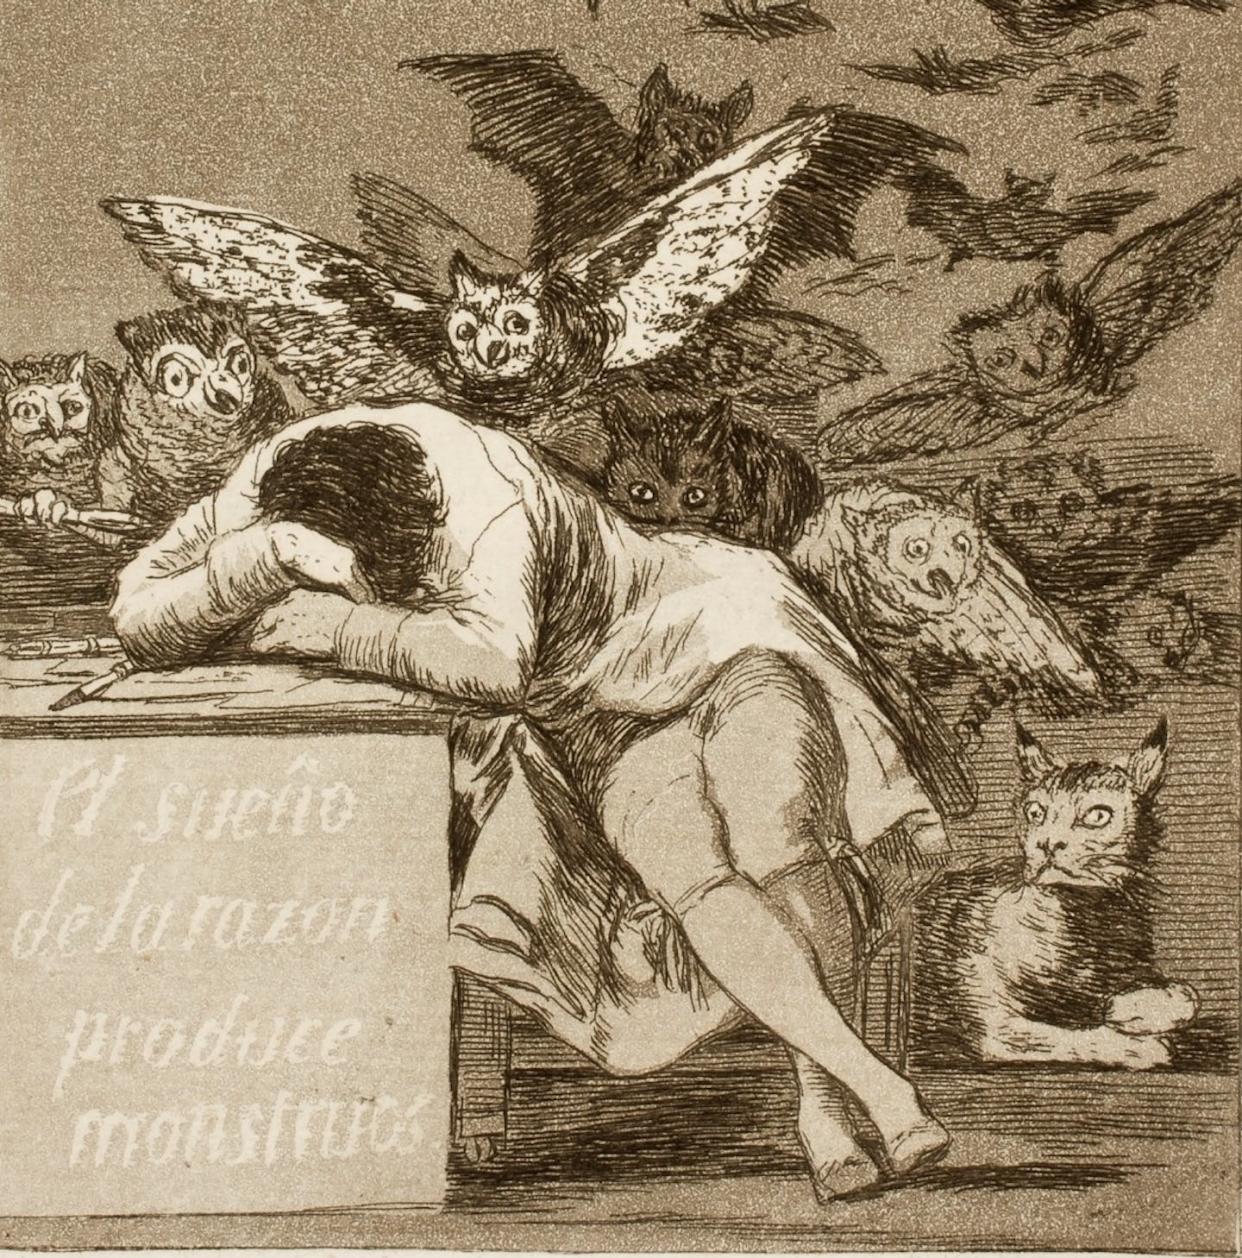 Aguafuerte 'El sueño de la razón produce monstruos', de Francisco de Goya. <a href="https://www.museodelprado.es/coleccion/obra-de-arte/el-sueo-de-la-razon-produce-monstruos/e4845219-9365-4b36-8c89-3146dc34f280" rel="nofollow noopener" target="_blank" data-ylk="slk:Museo del Prado;elm:context_link;itc:0;sec:content-canvas" class="link ">Museo del Prado</a>